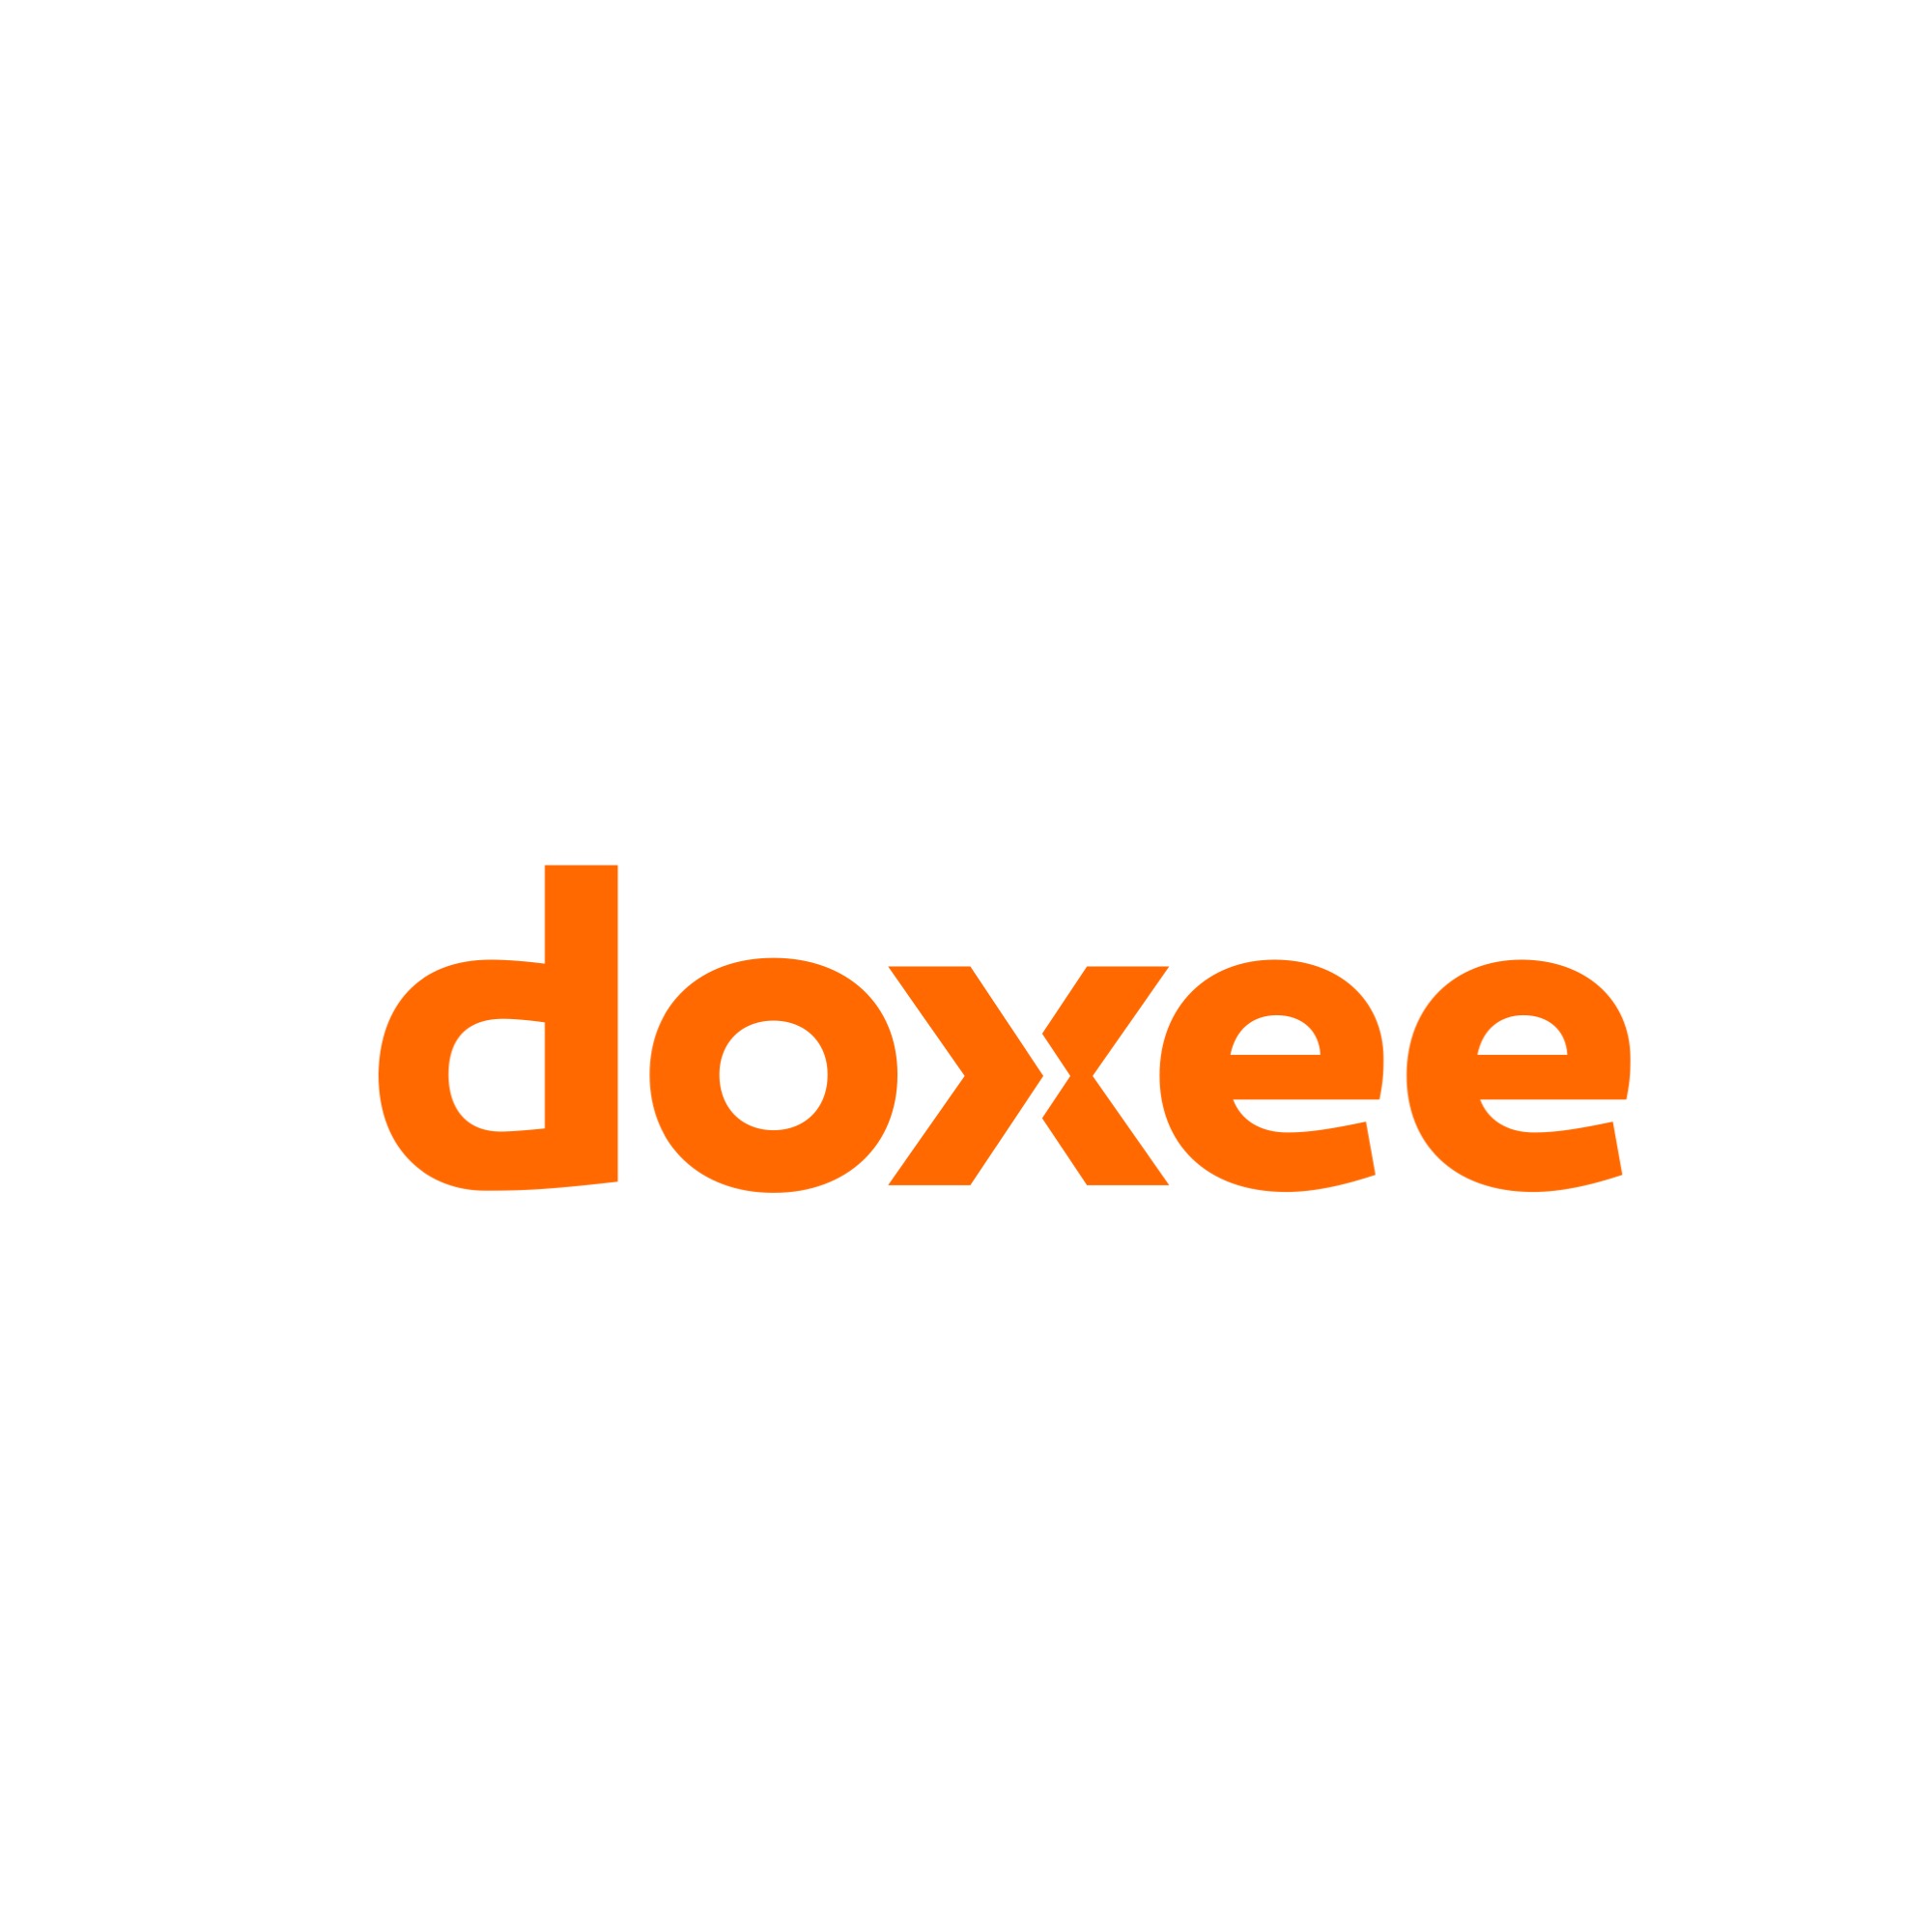 DOXEE - #ilCliente